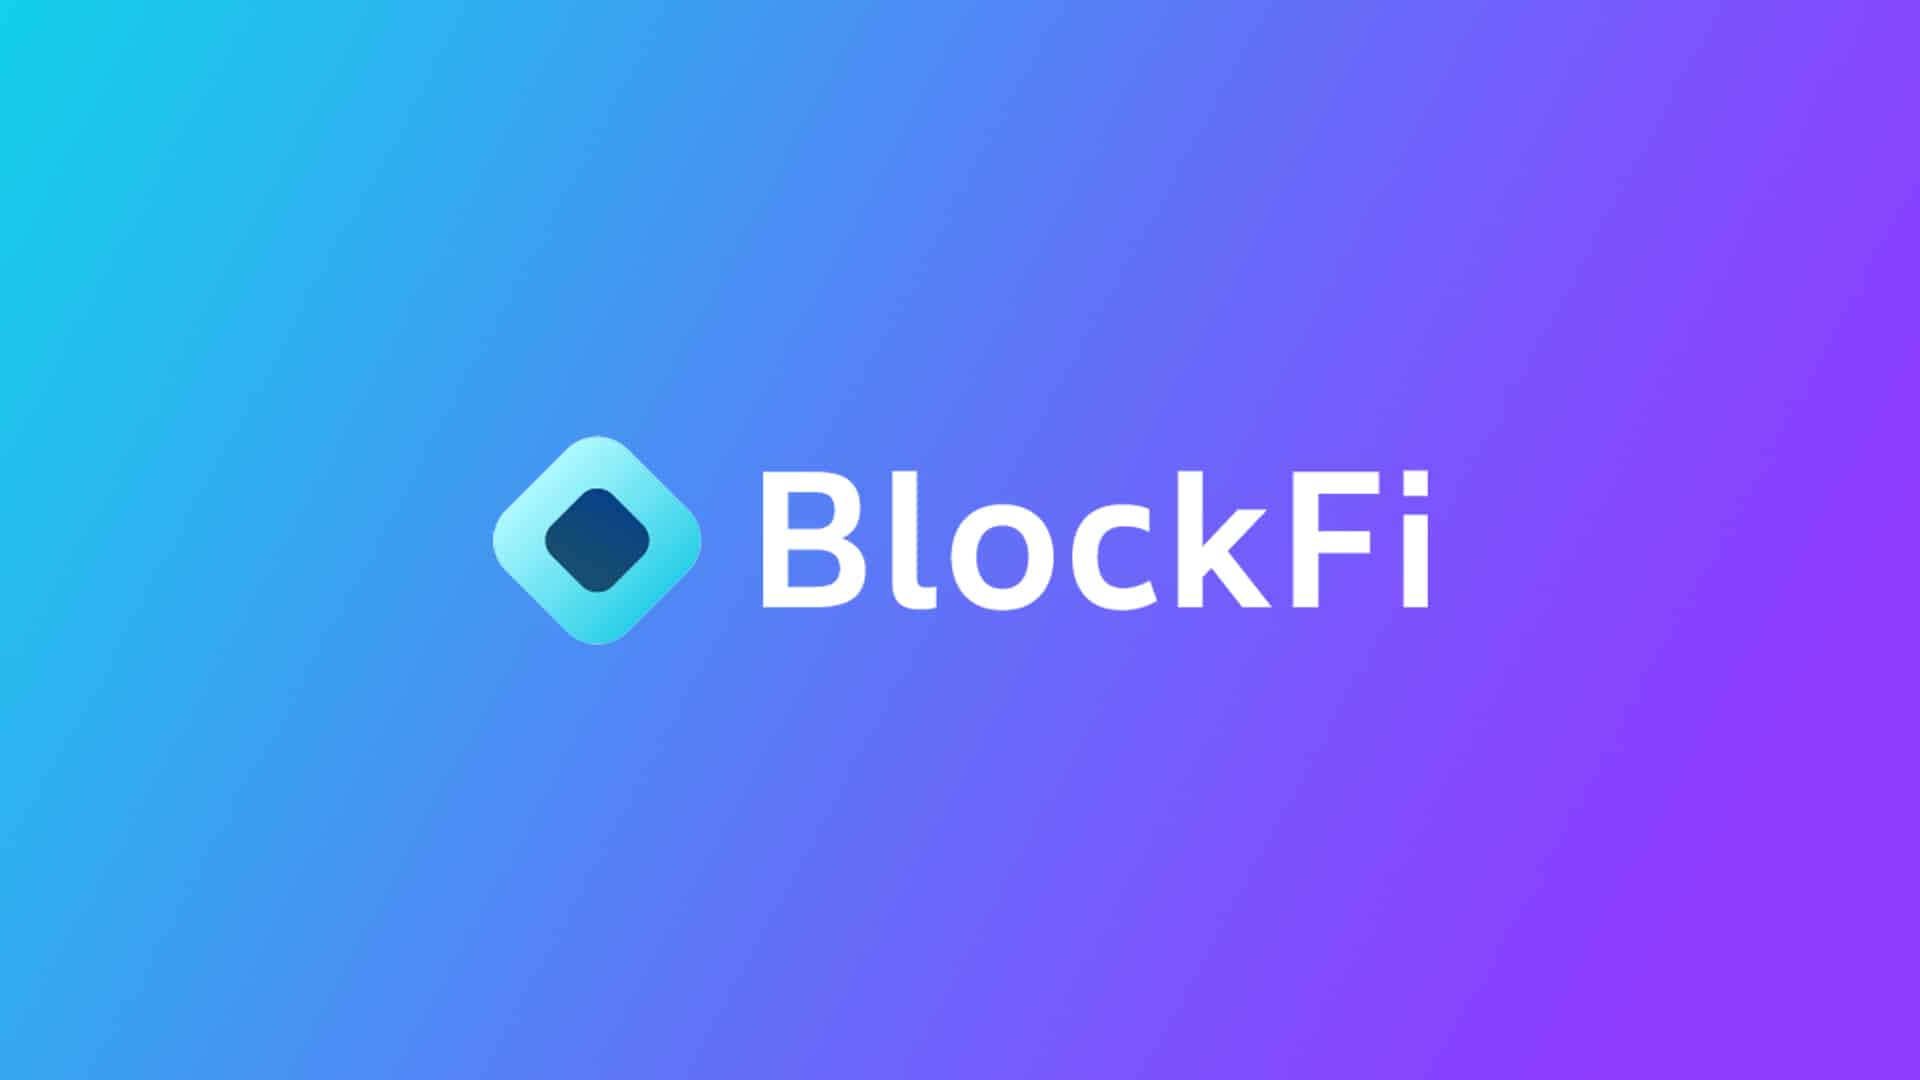 BlockFi raises funds worth $30 million